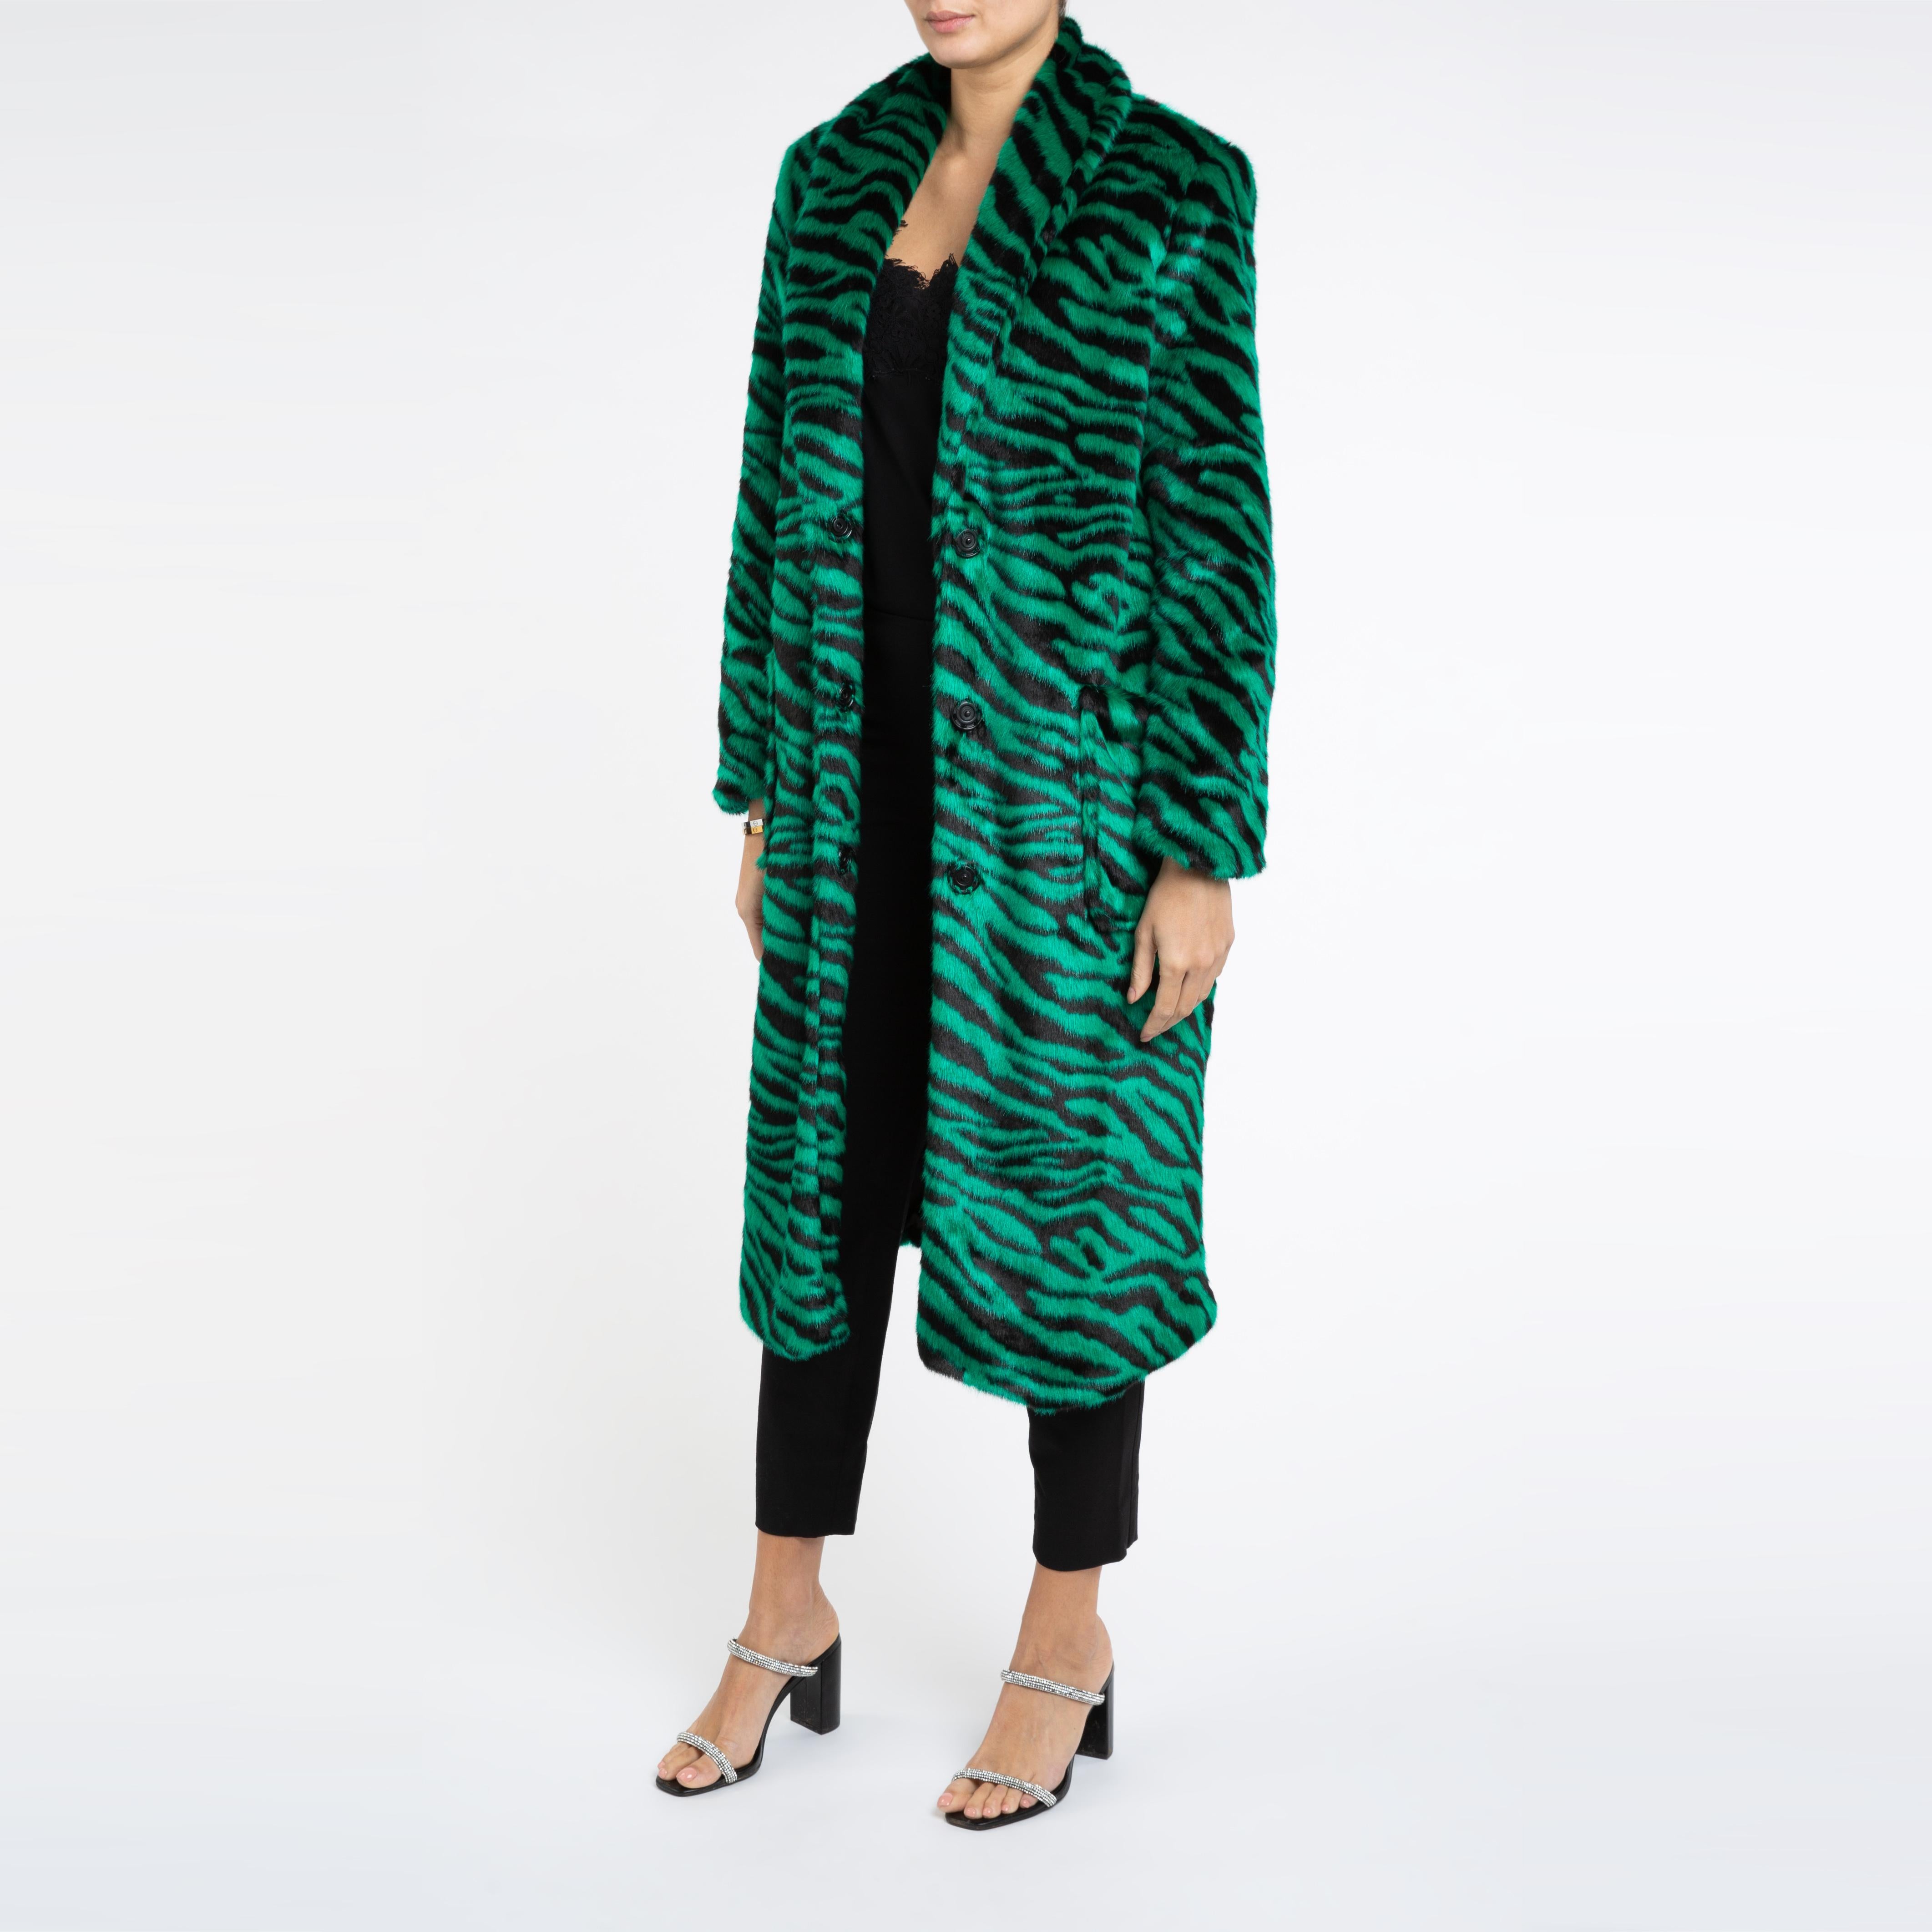 Verheyen London Esmeralda Faux Fur Coat in Emerald Green Zebra Print size uk 12 For Sale 2